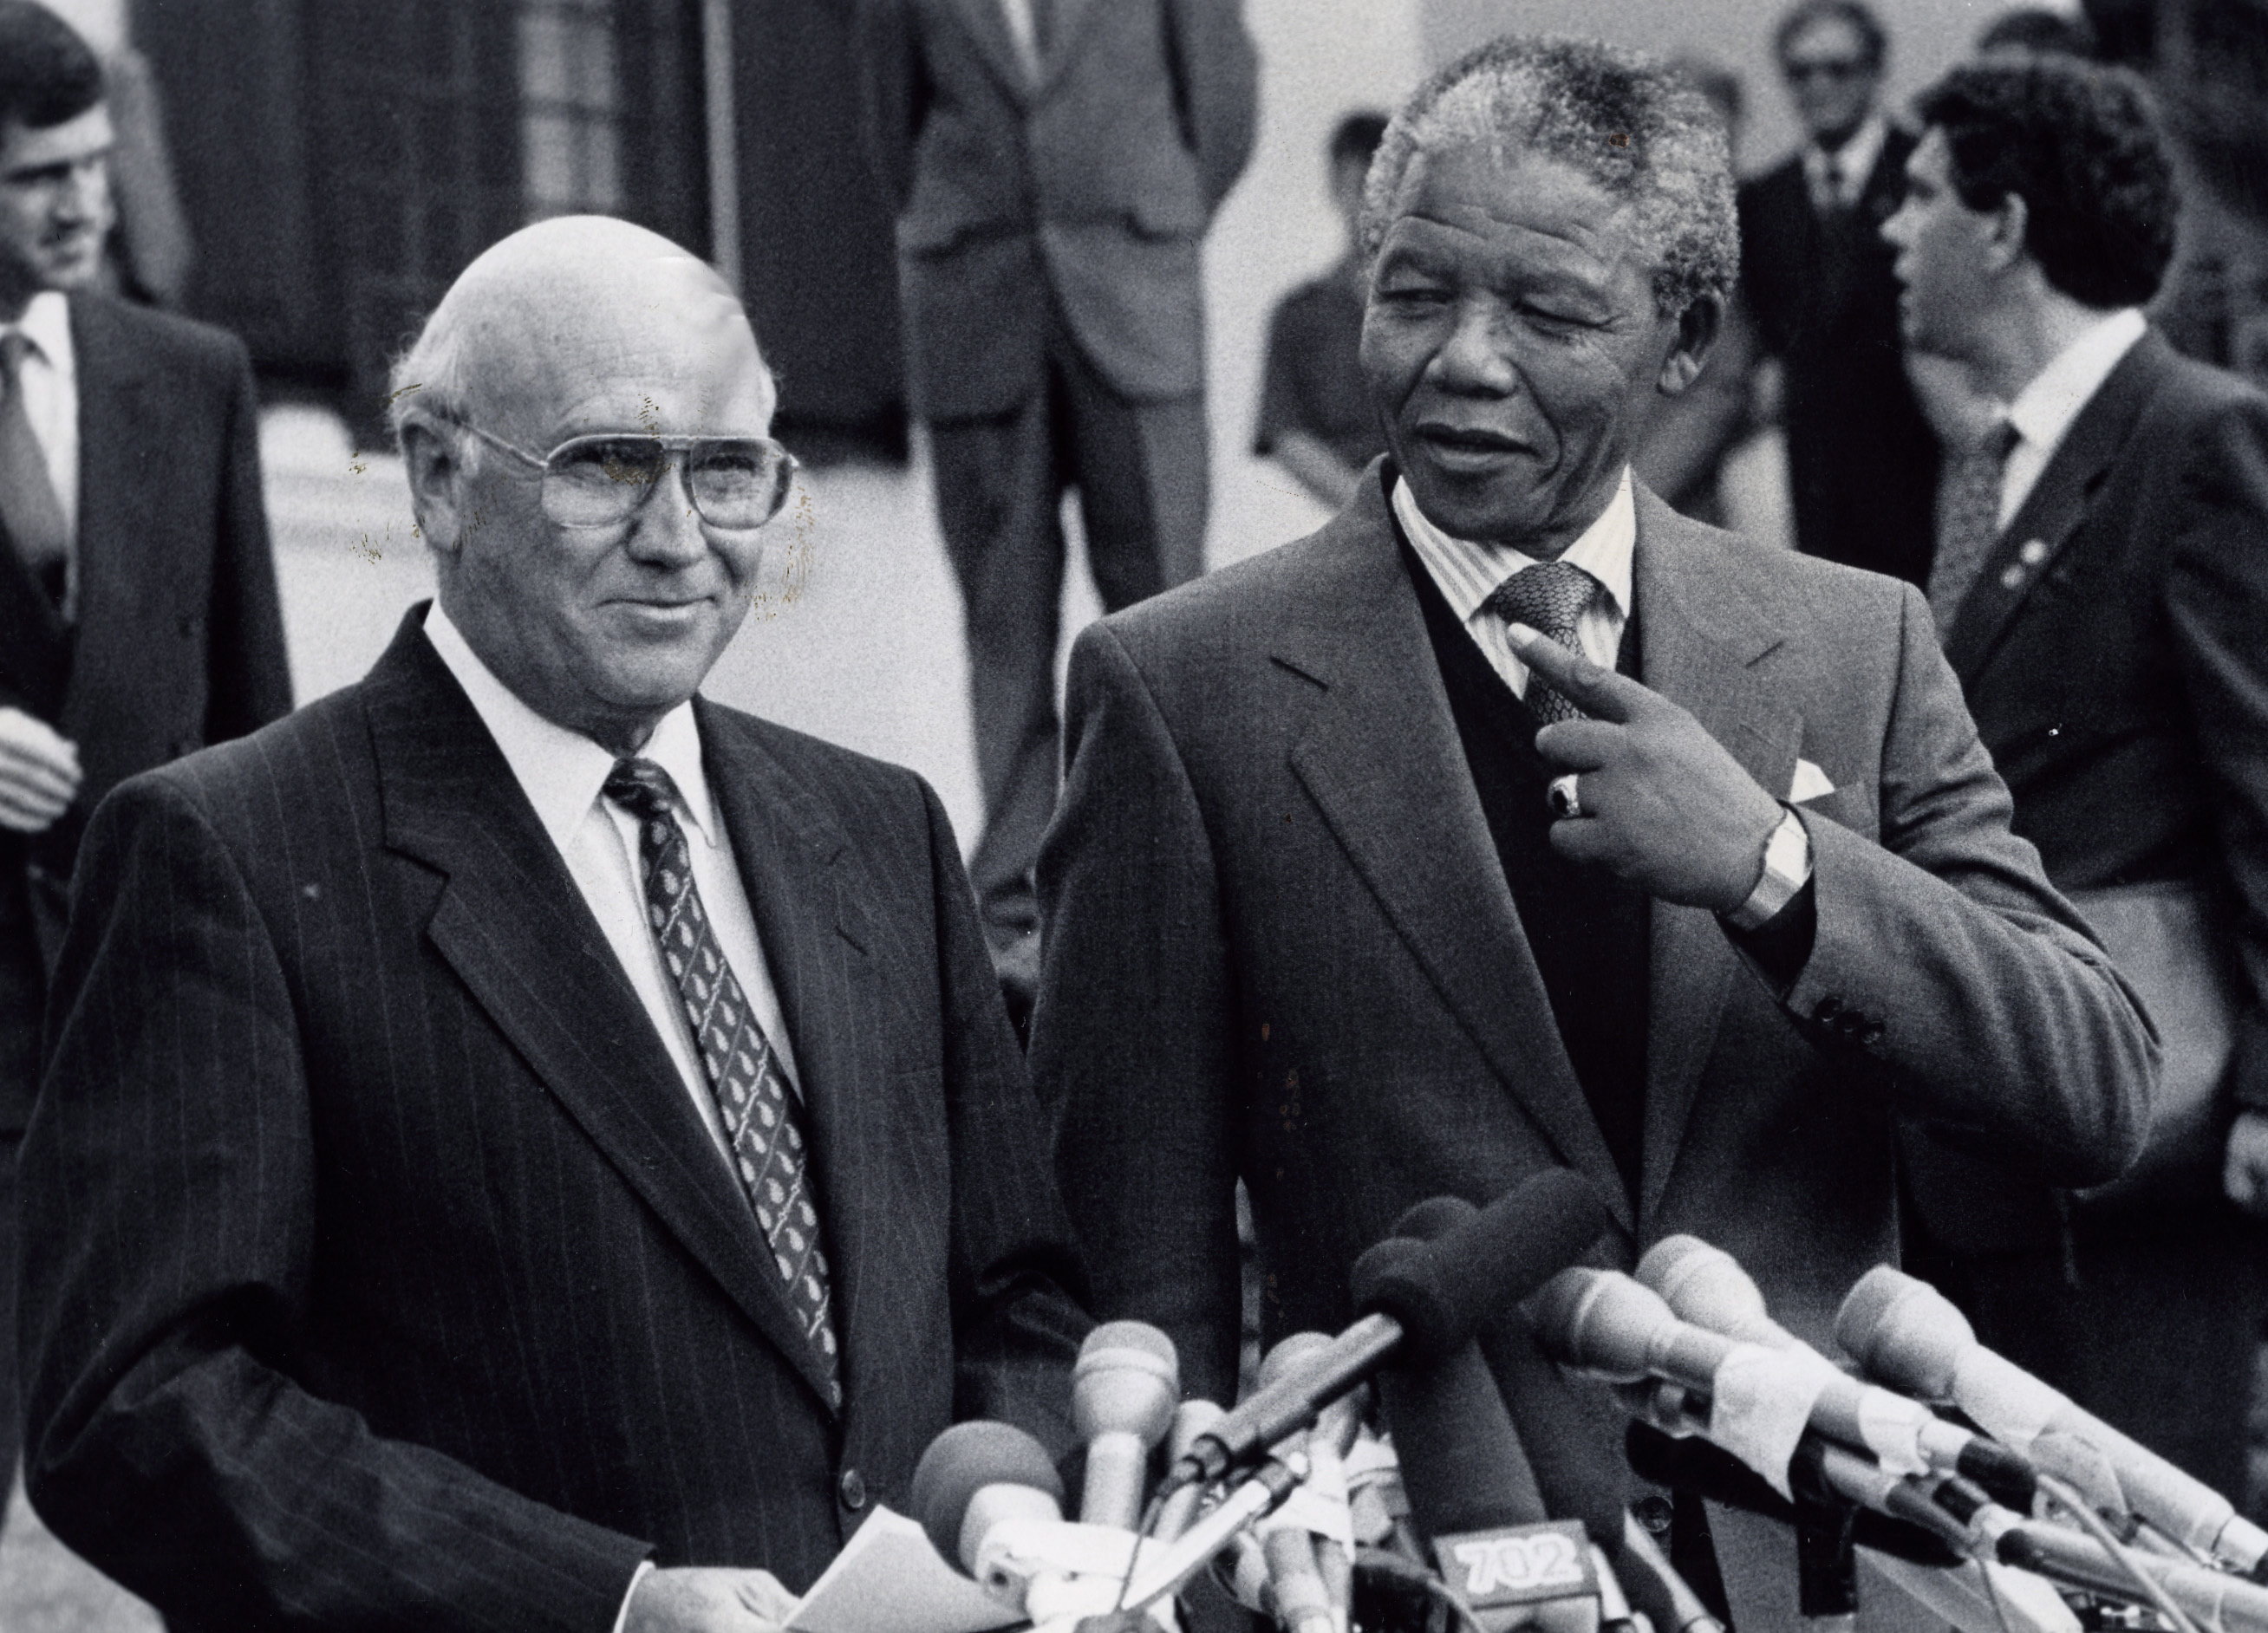 Фредерик де Клерк бивш президент на Южна Африка и последният